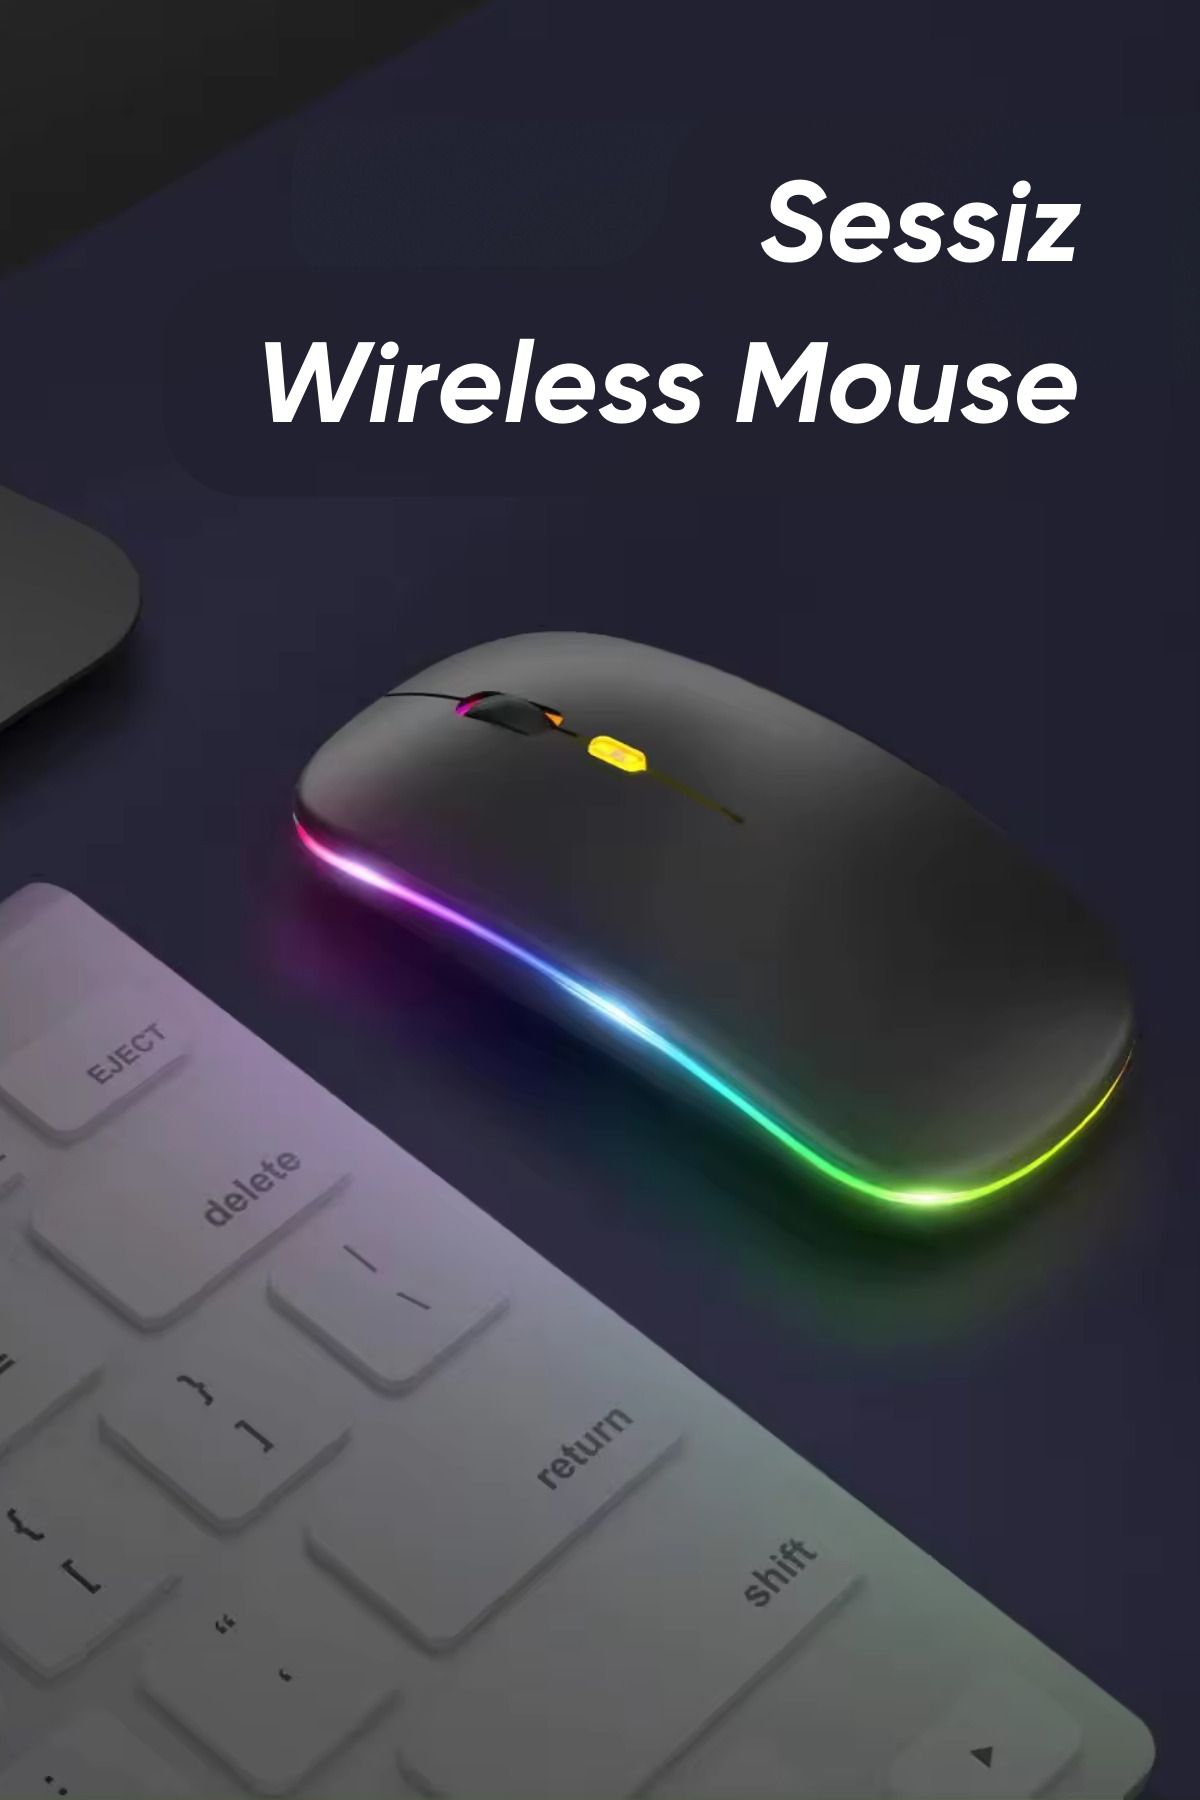 Ekru Cep Kablosuz Wireless Sessiz Mouse Şarj Edilebilir RGB Renkli ve Renksiz Kullanım Ergonomik Tasarımlı